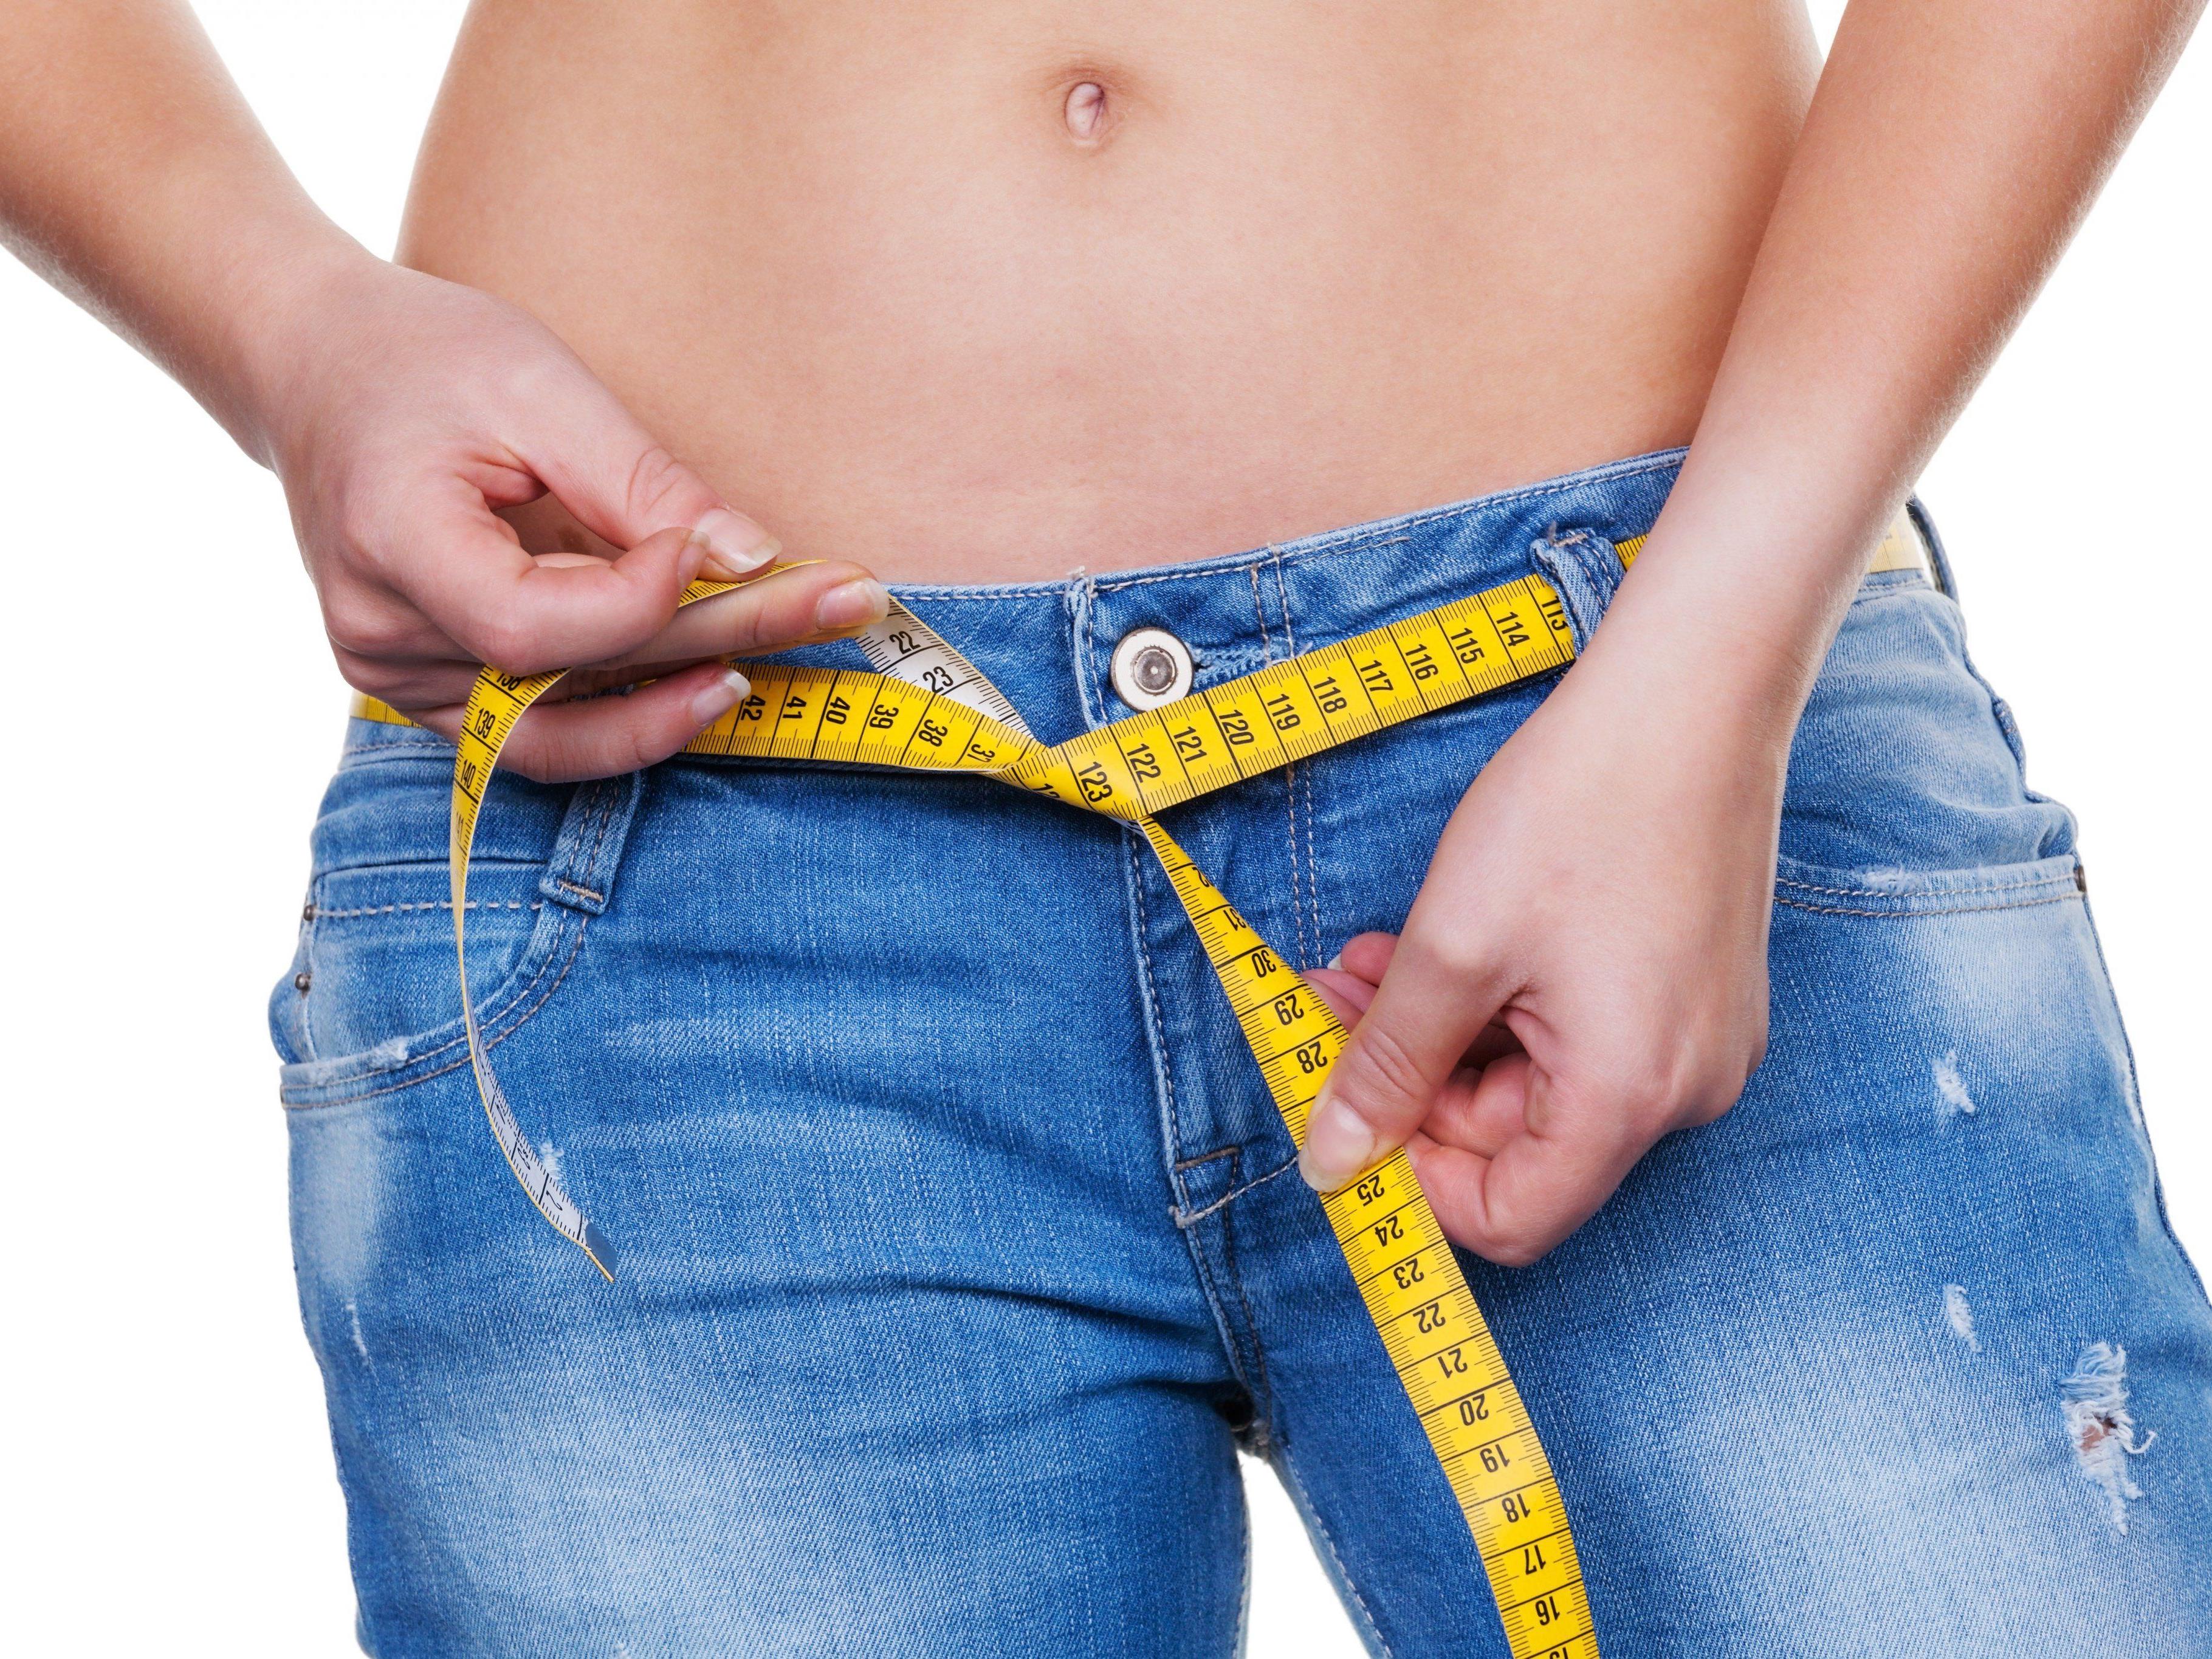 Radikal-Diät vs. langsames Abnehmen: Gewichtszunahme laut Studie in beiden Fällen gleich.